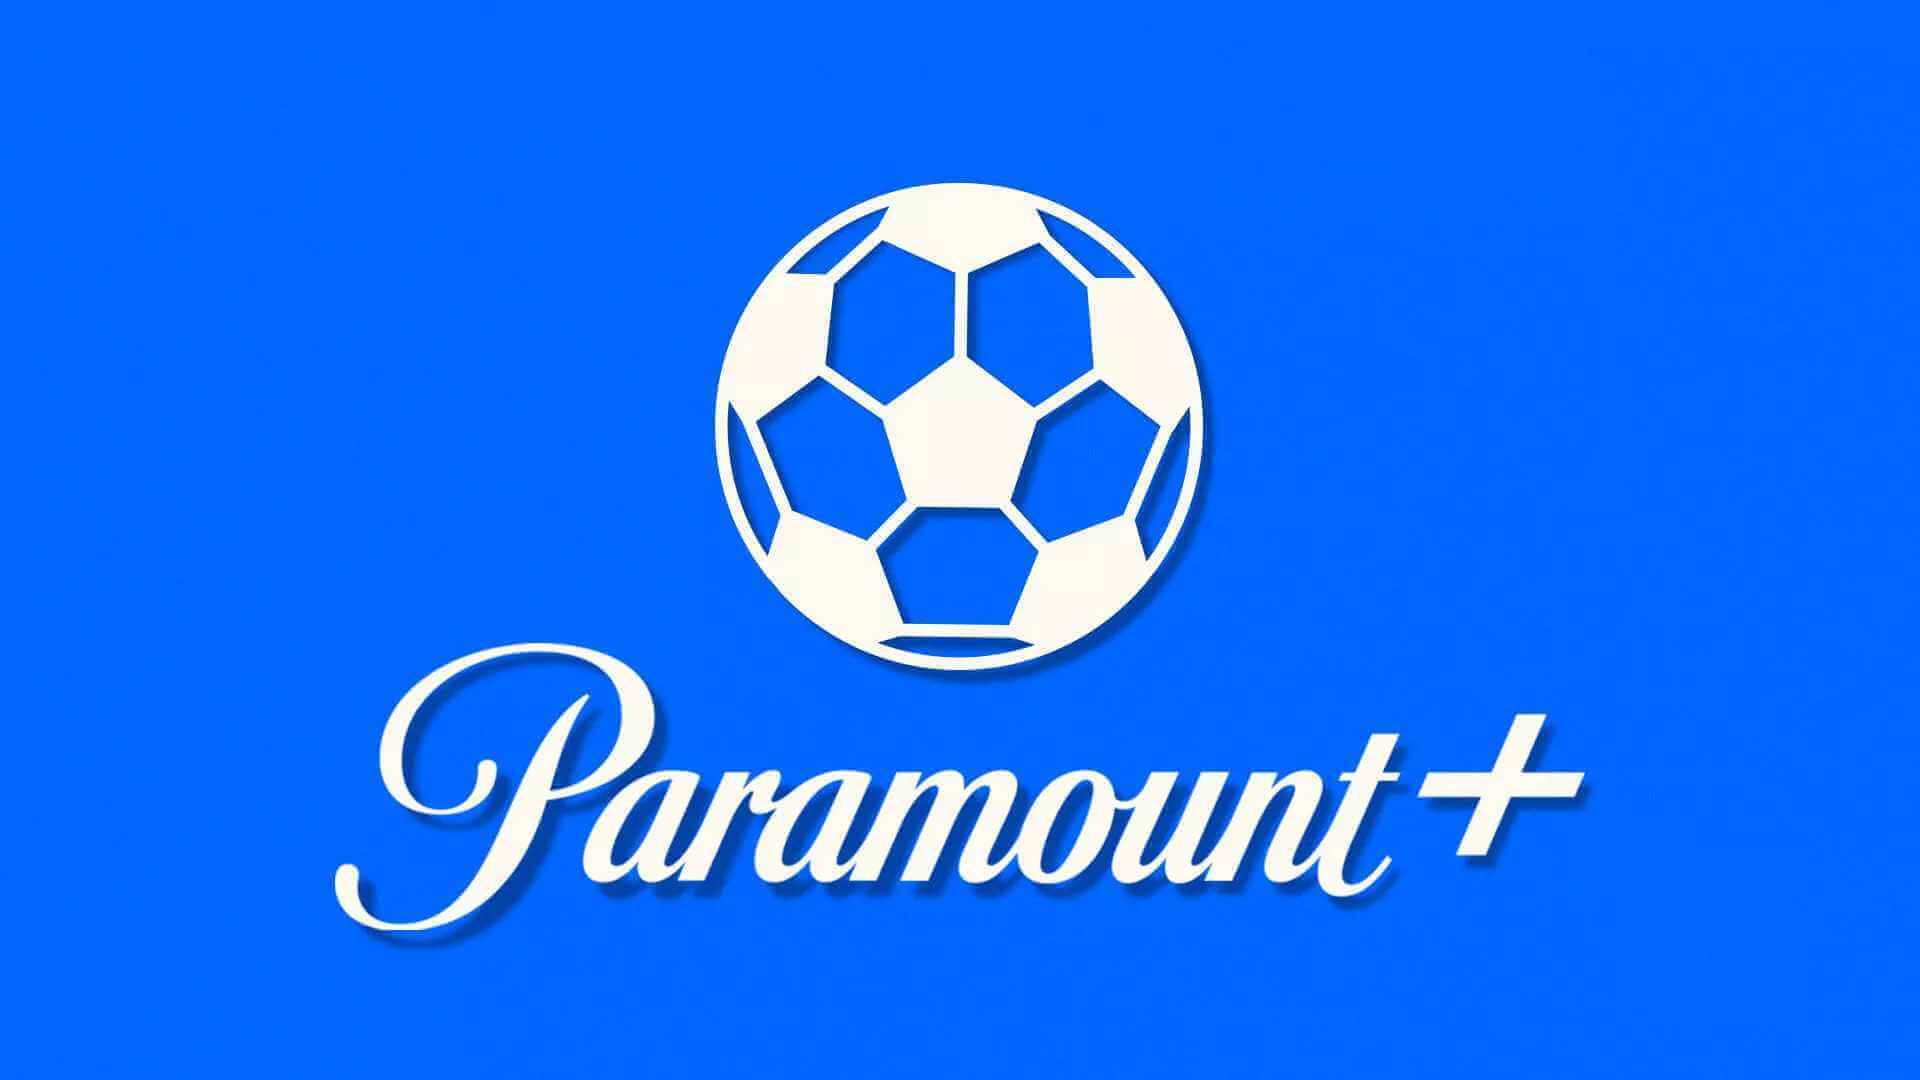 Champions League en direct avec Pramount+